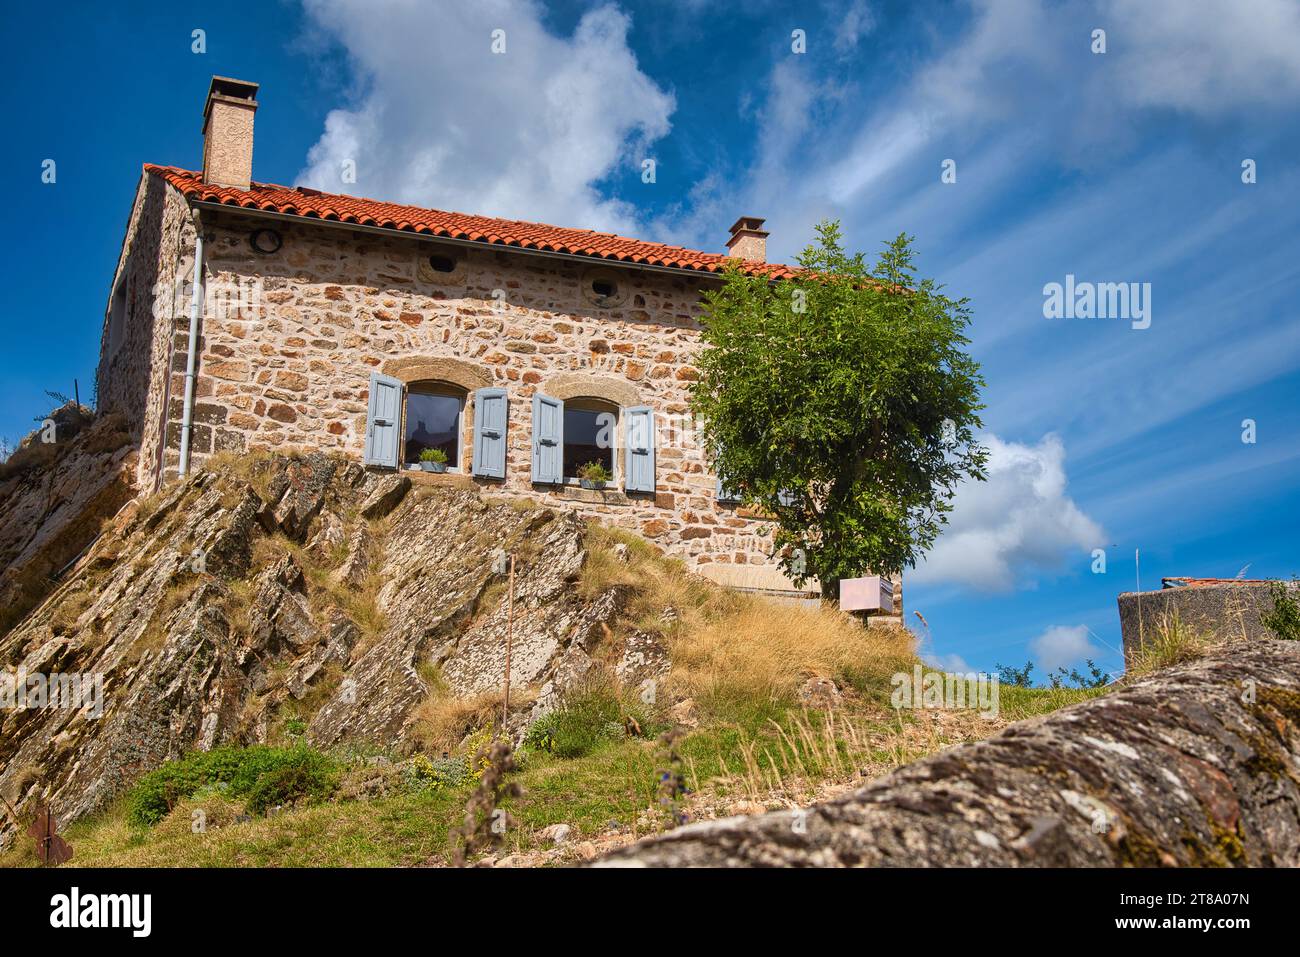 Une maison traditionnelle en pierre à Pradelles en Auvergne / una tradizionale casa in pietra a Pradelles, Auvergne Foto Stock